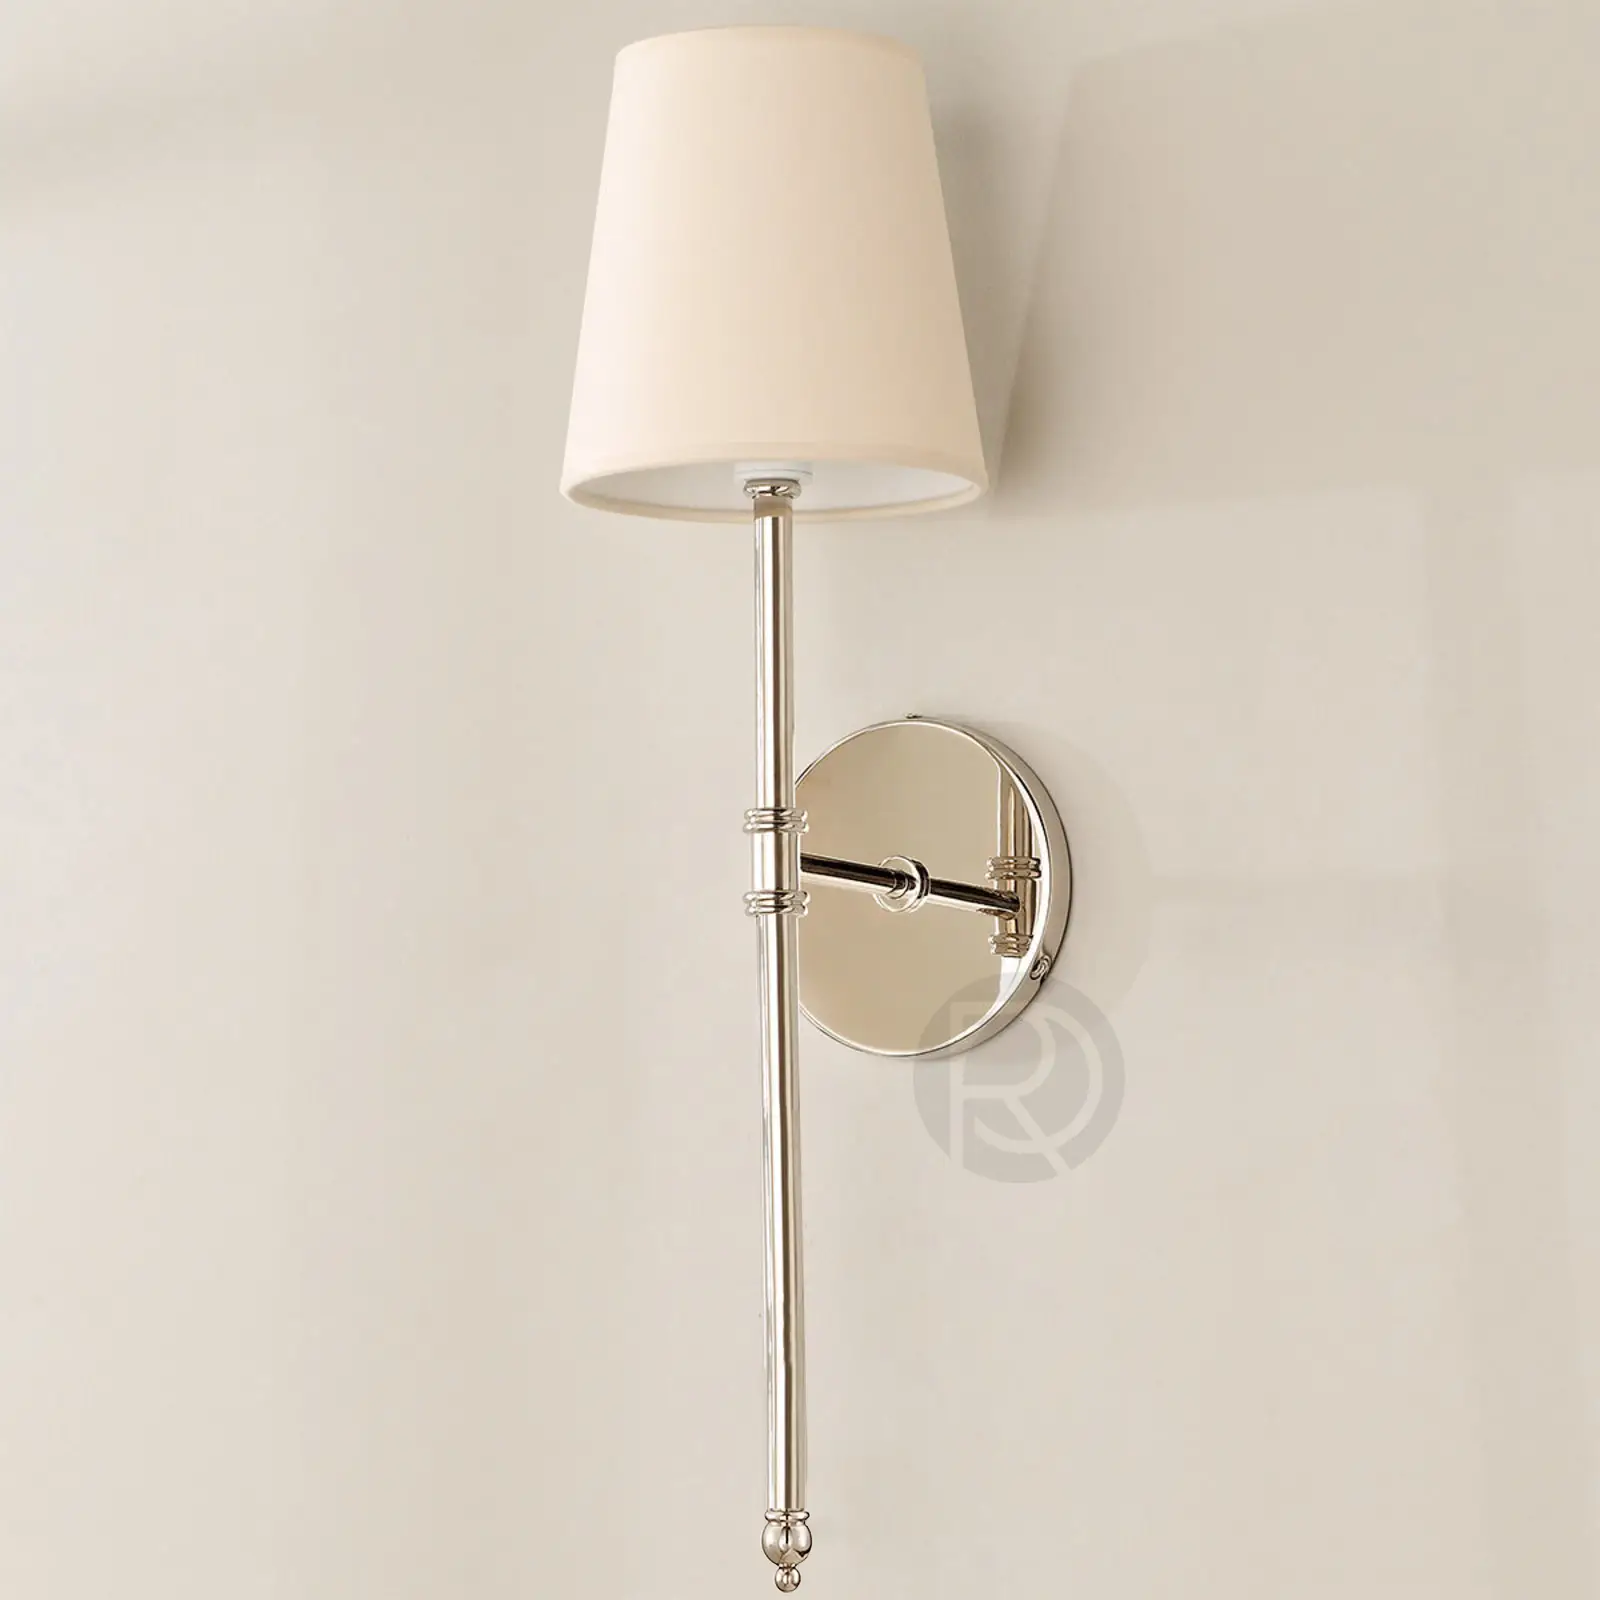 Designer wall lamp (Sconce) ESTERTO by Romatti